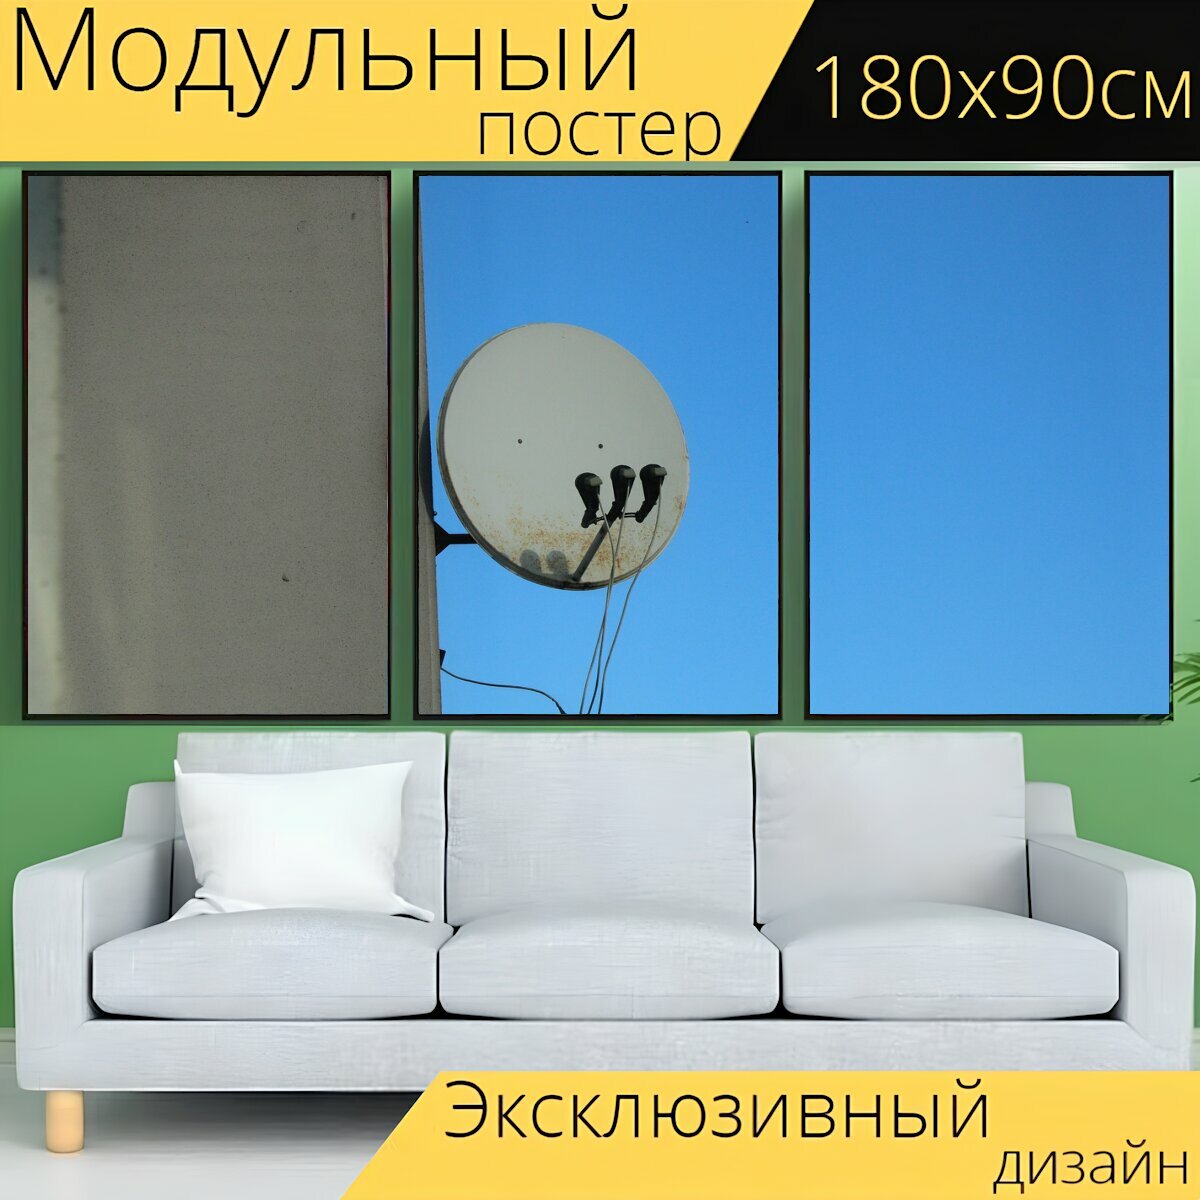 Модульный постер "Спутниковая тарелка, антенна, дом" 180 x 90 см. для интерьера